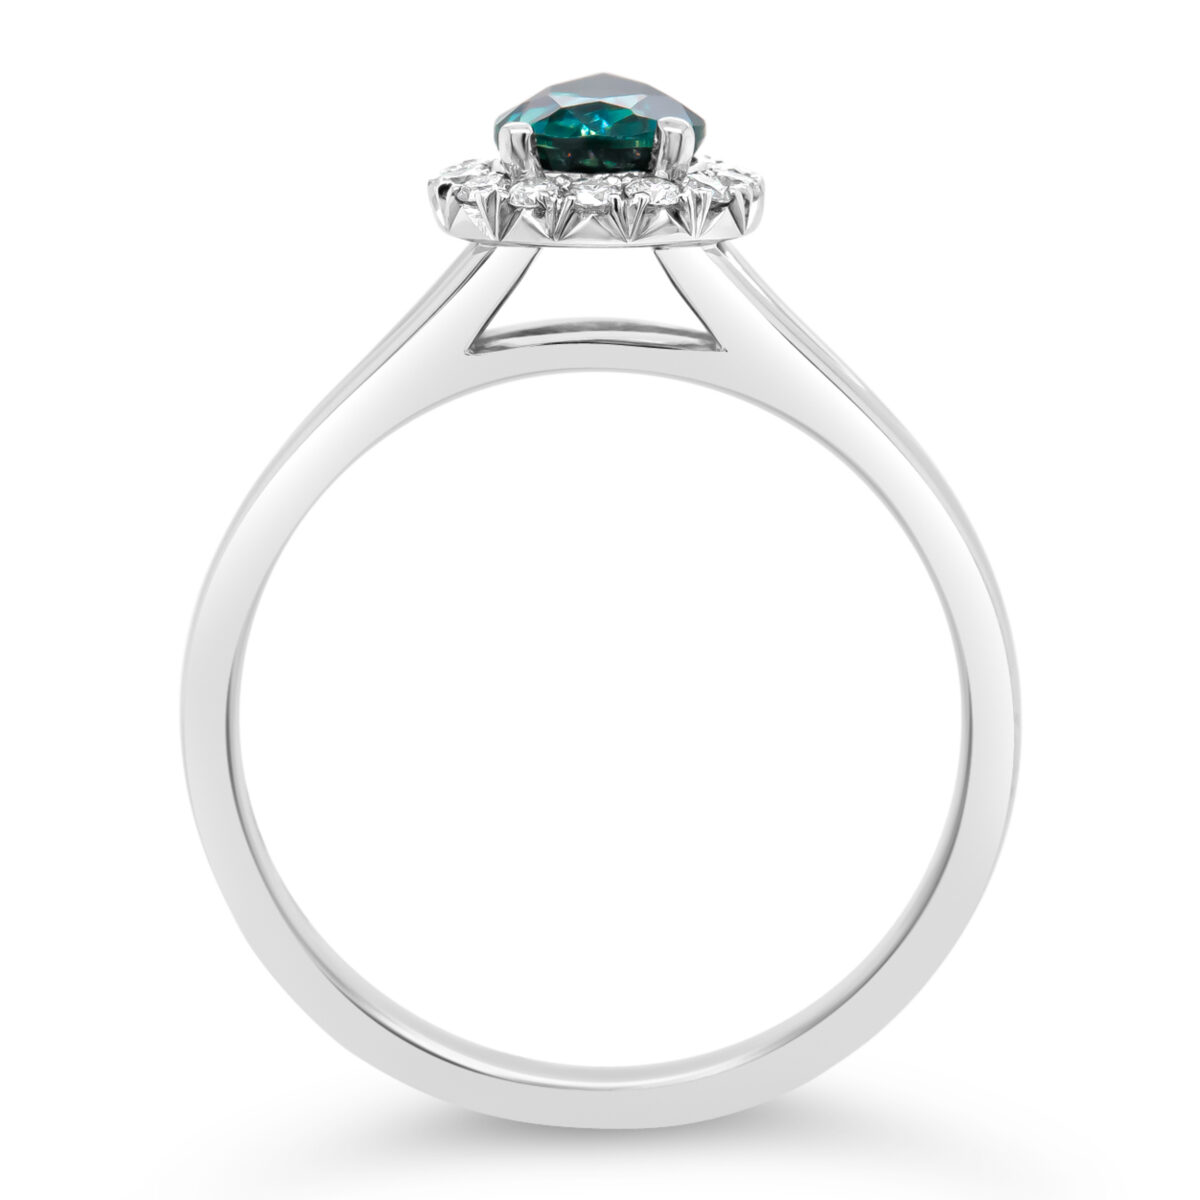 Celeste | Australian Teal Sapphire Ring - World Treasure Designs